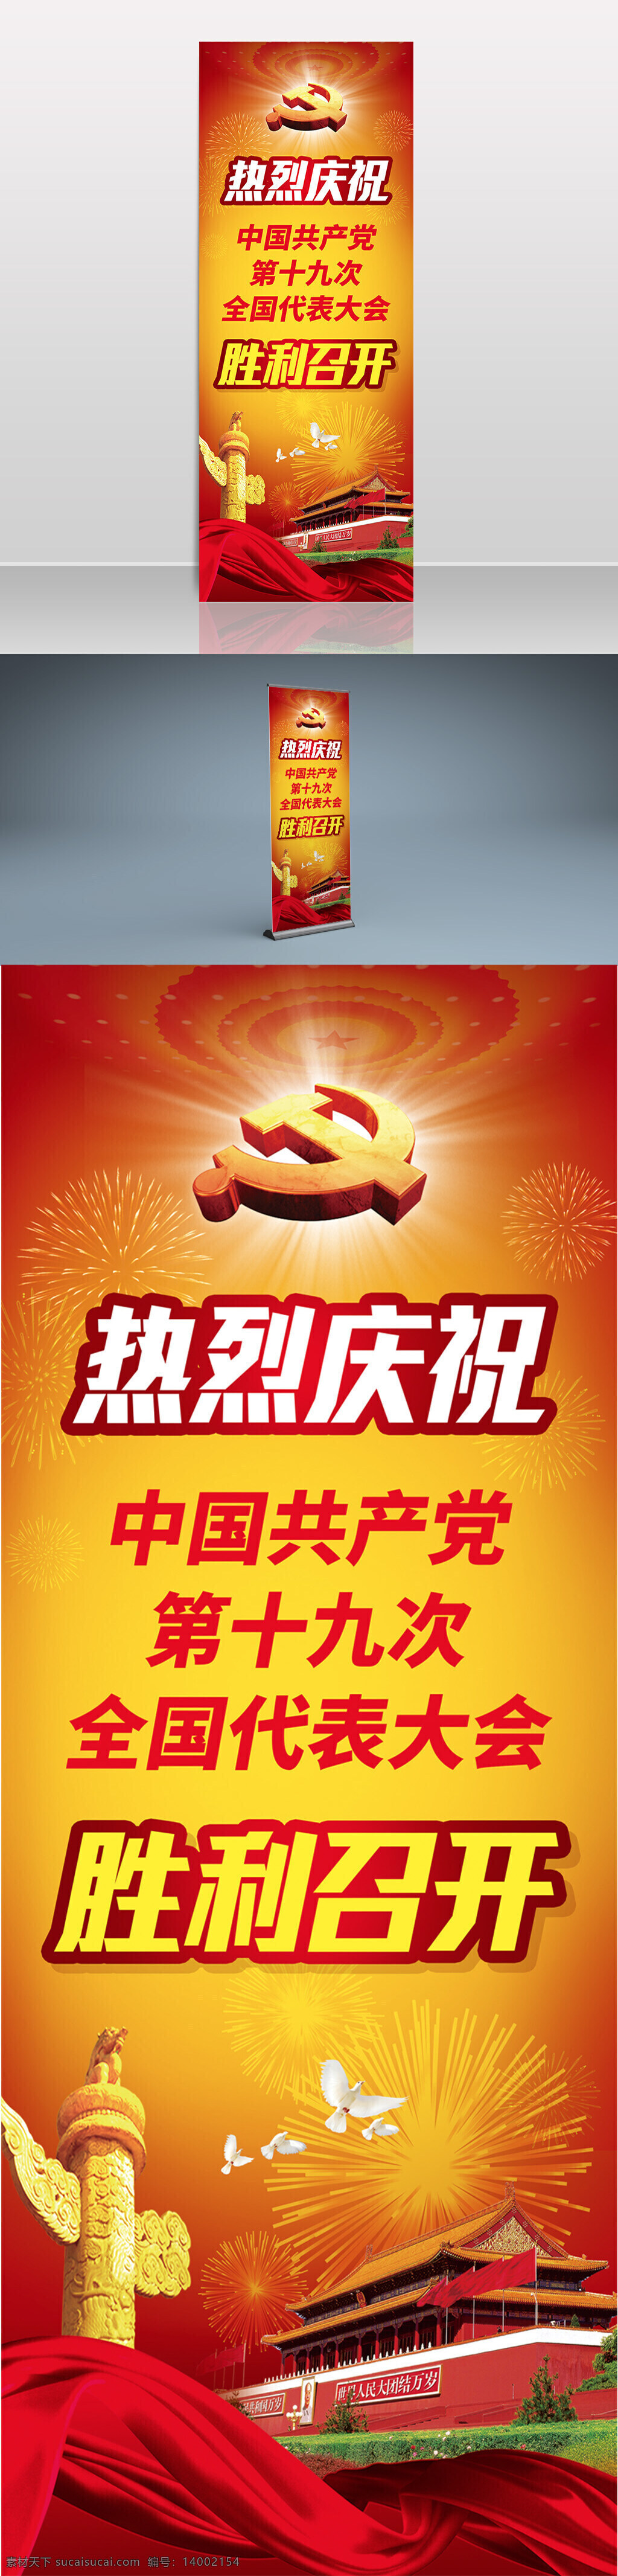 中国共产党 十 九 次 全国代表大会 展架 易拉宝 党建 十九大 x展架